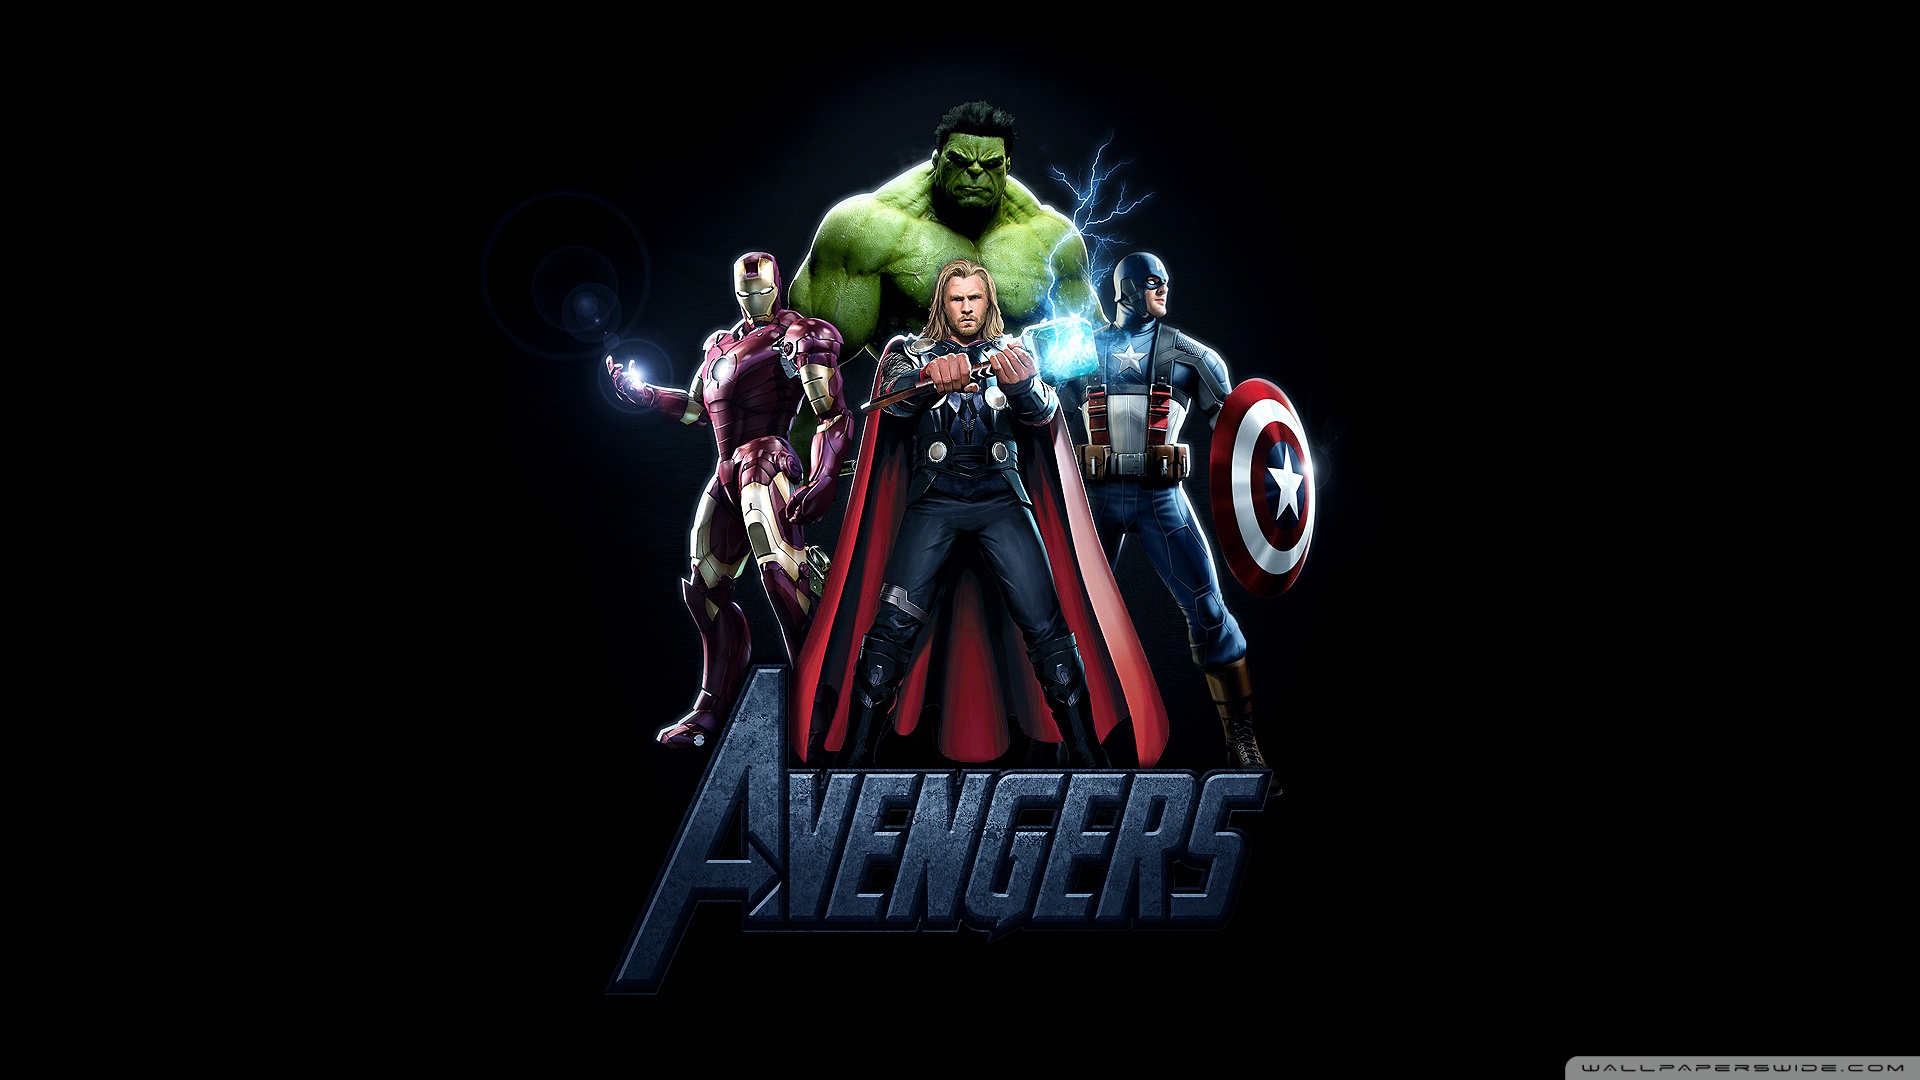 The+avengers+movie+2012+wallpaper